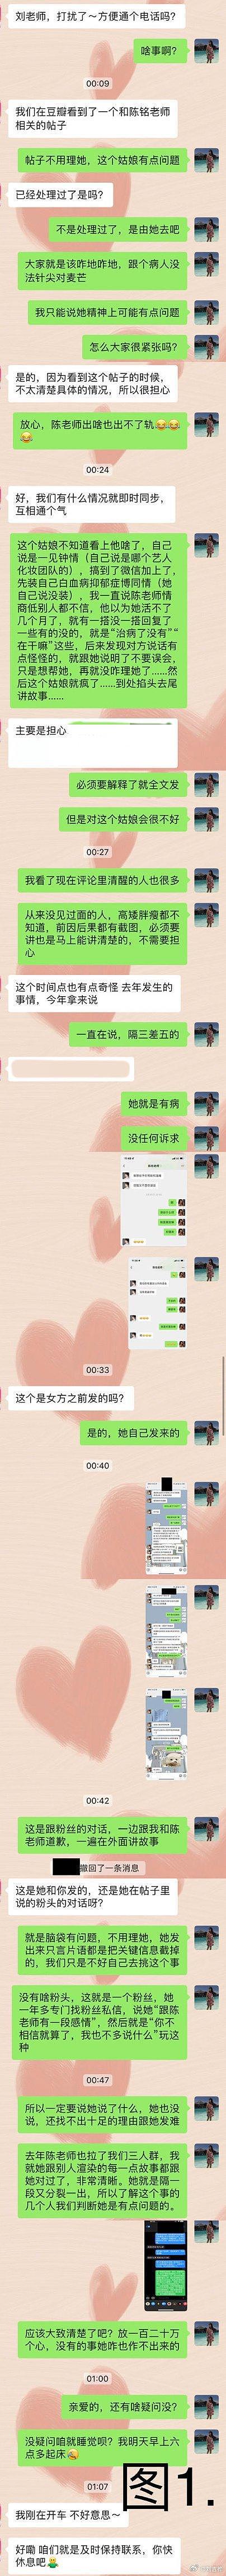 女粉丝曝与陈铭聊天记录 陈铭老婆发长文回应争议 - 7